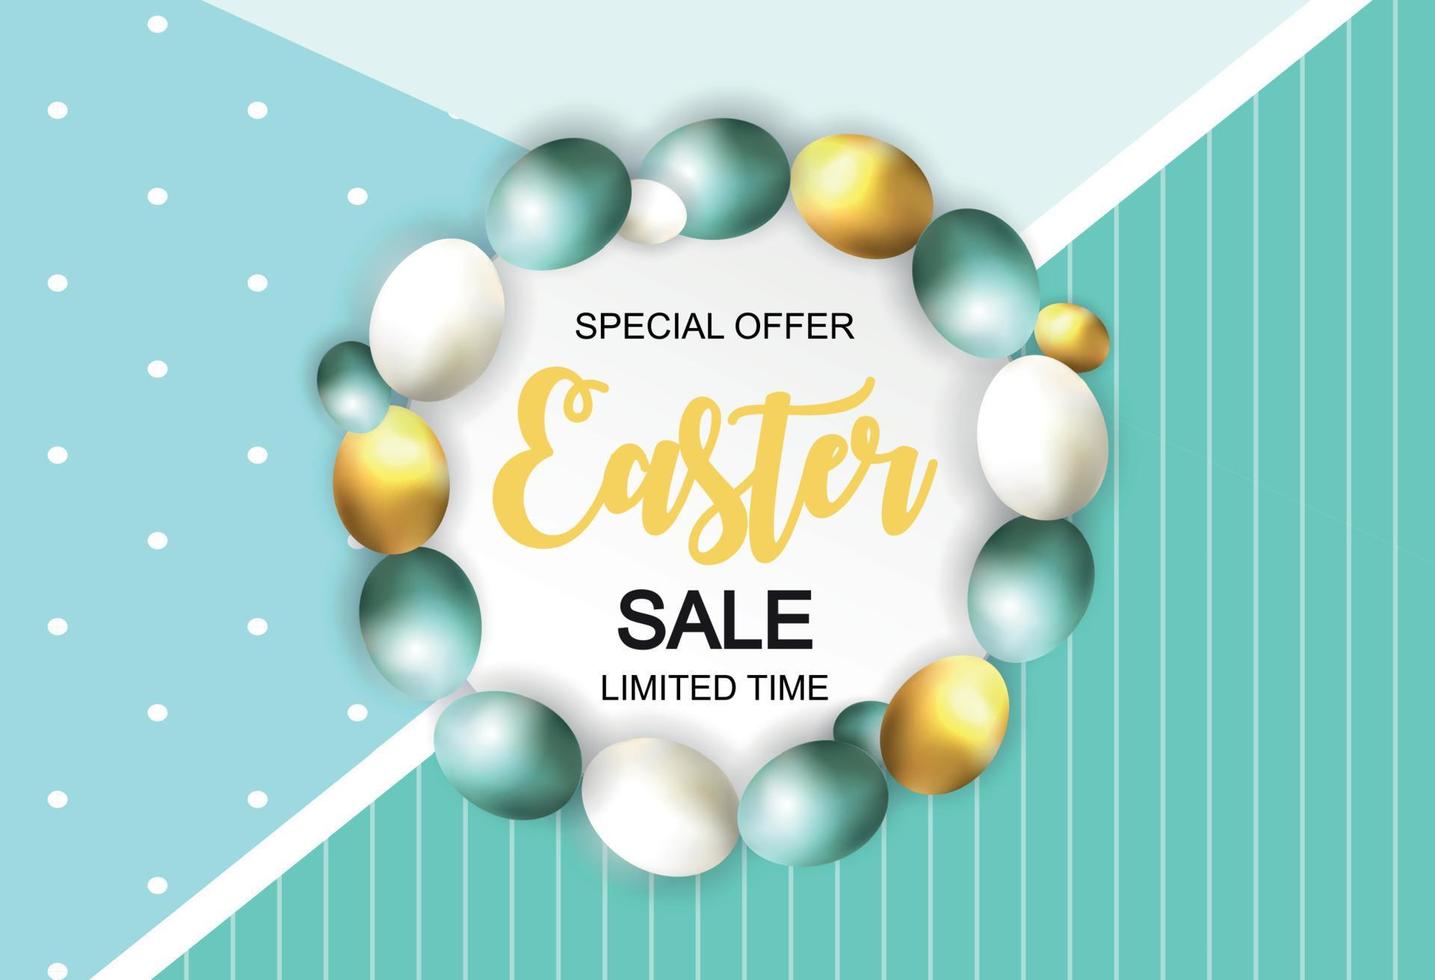 felice Pasqua carino vendita poster sfondo con le uova. illustrazione vettoriale